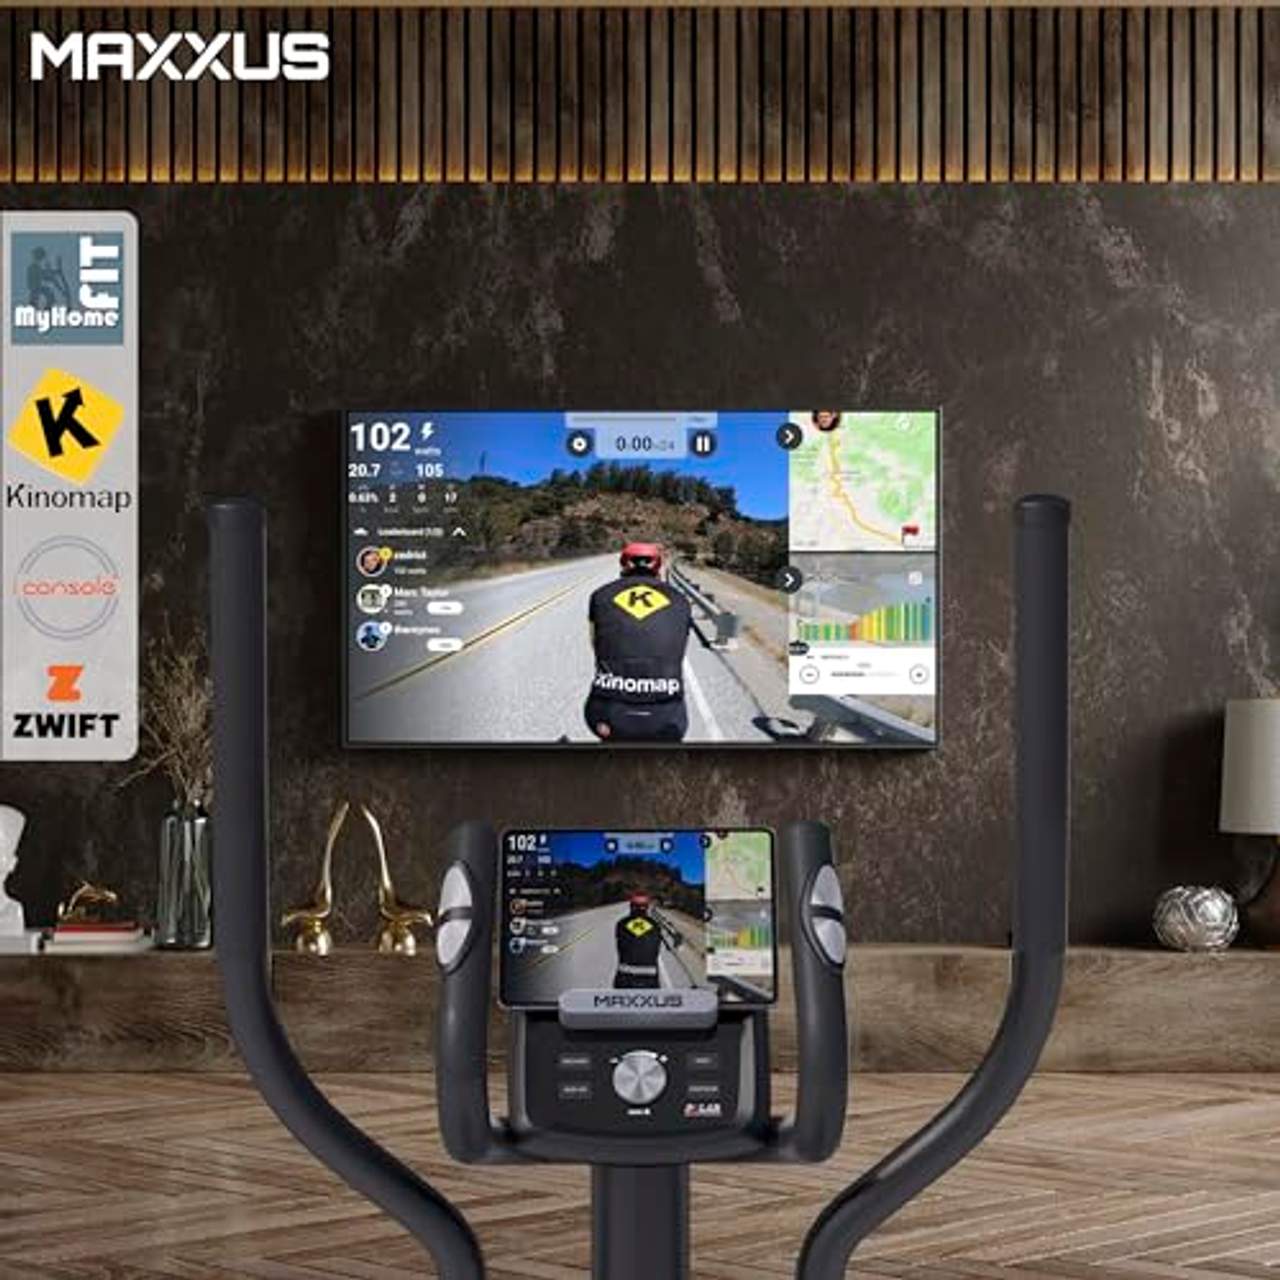 Maxxus Crosstrainer CX